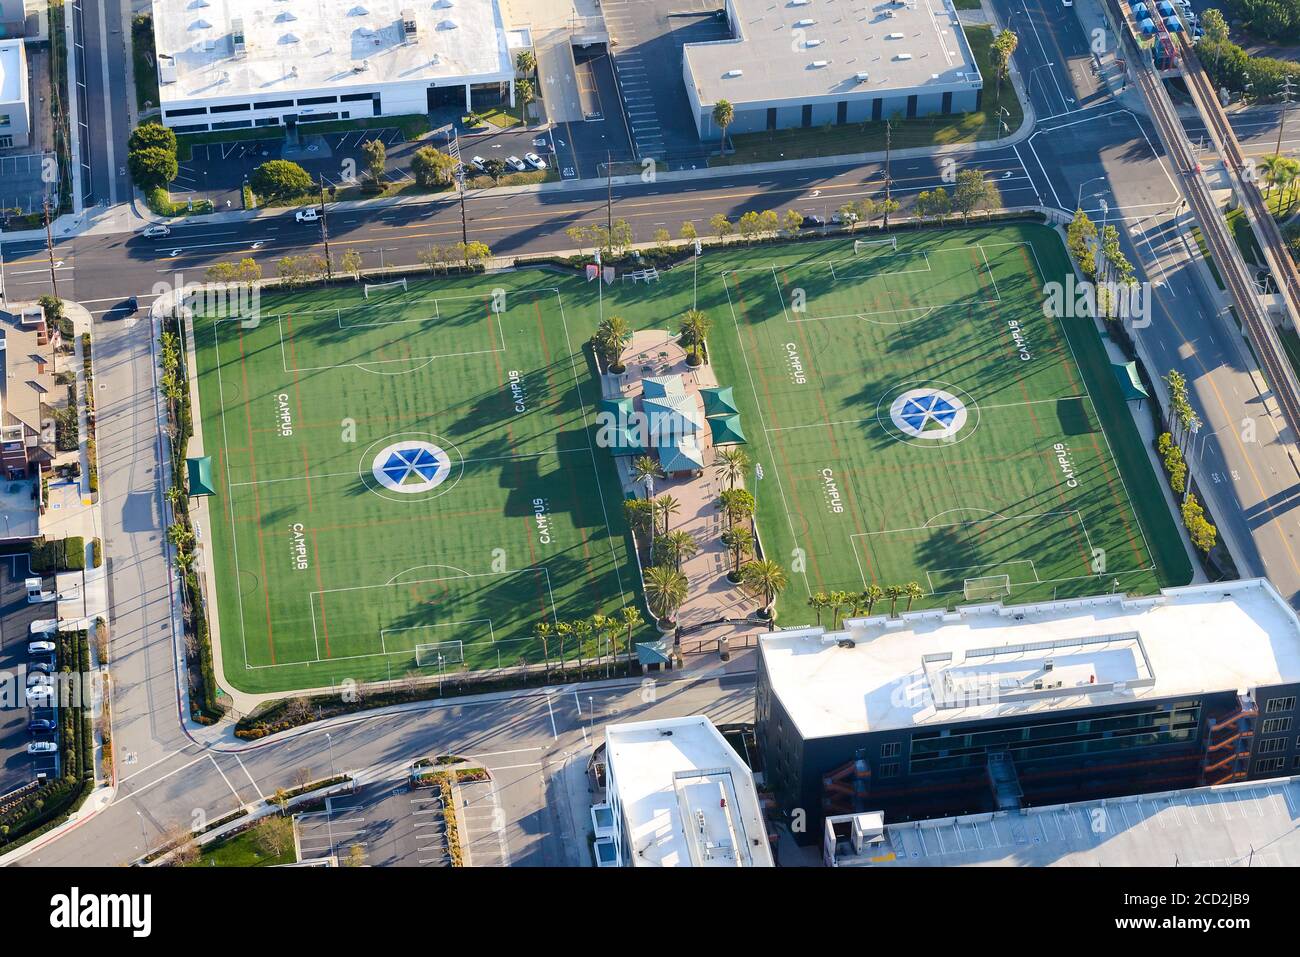 Campus El Segundo campi atletici. Campo sportivo aperto da David Beckham e Zinedine Zidane a Los Angeles, California, USA. Campo di calcio. Foto Stock